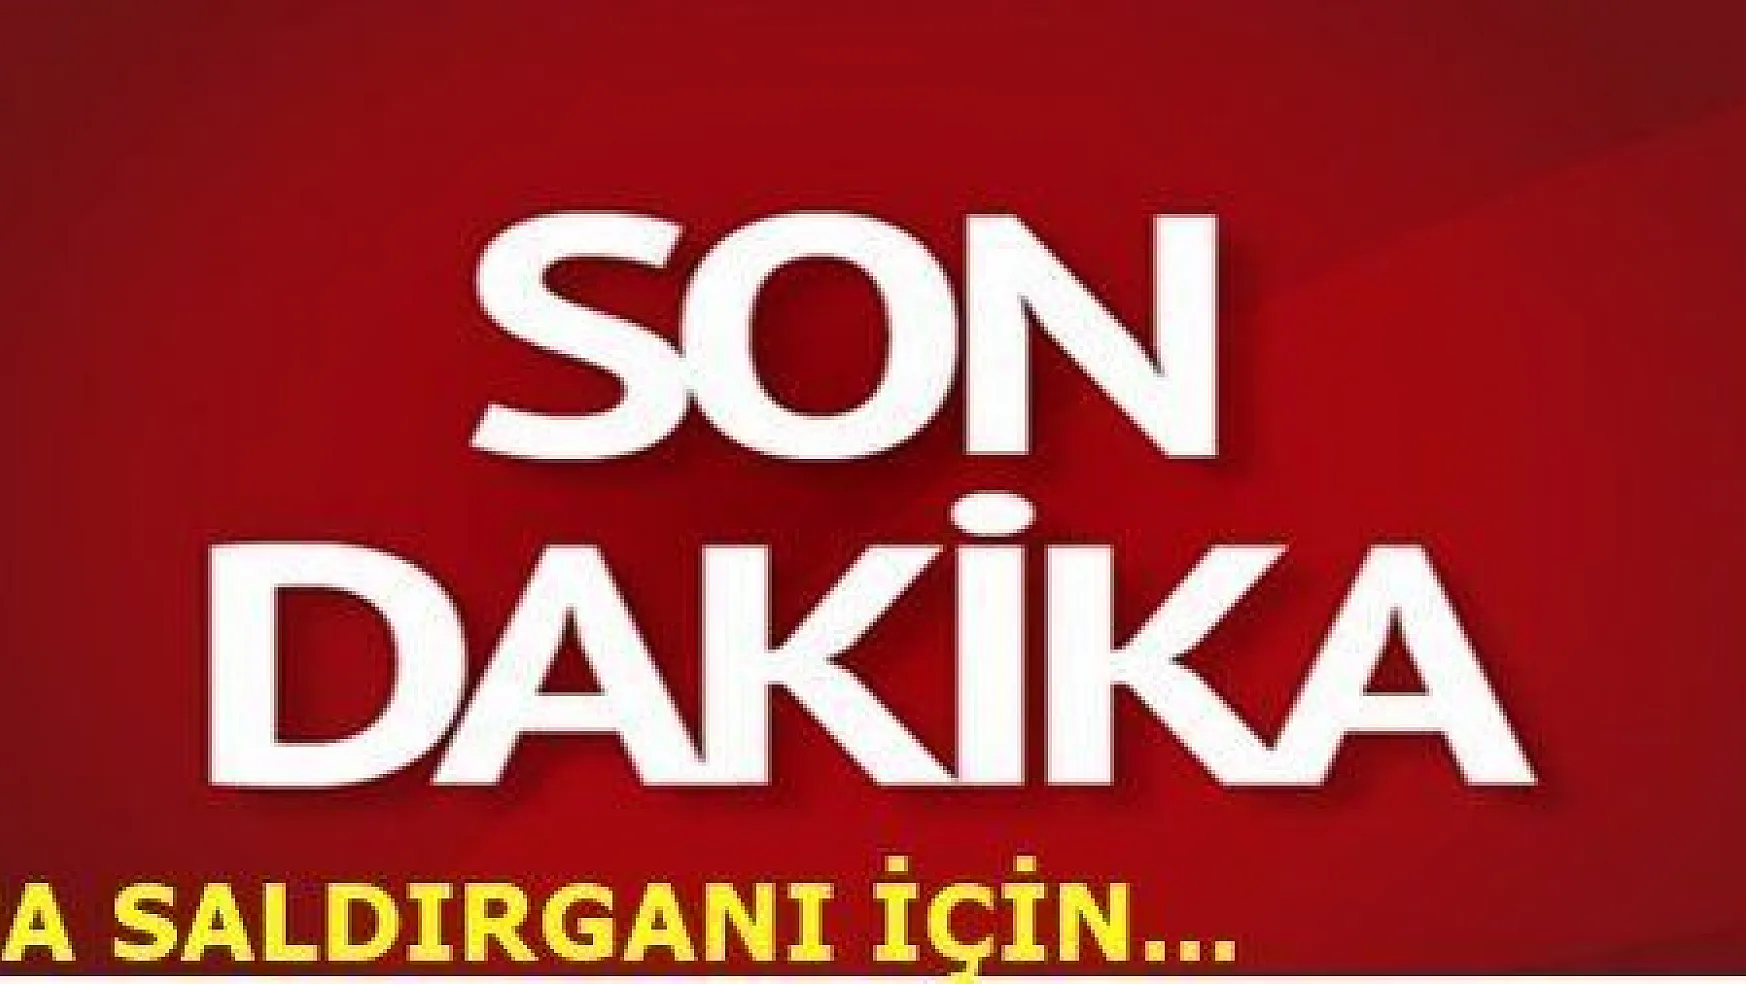 REİNA SALDIRGANI İÇİN BODRUM'DA POLİS VE JANDARMA ALARMA GEÇTİ...